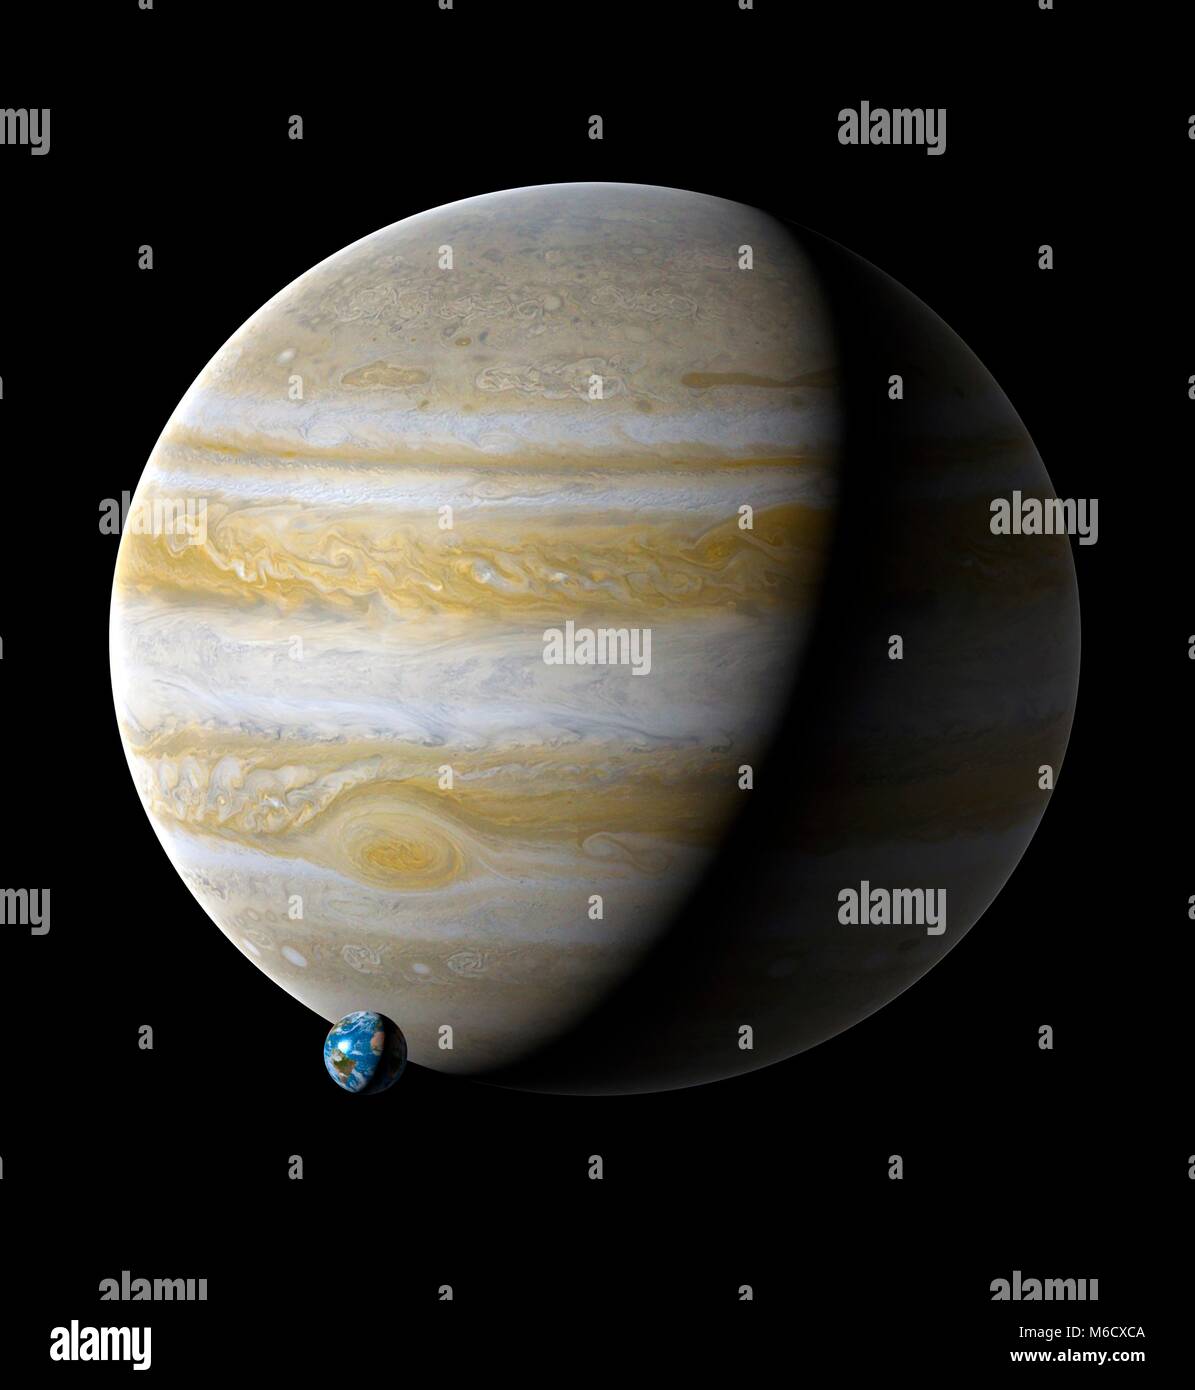 Per il confronto di immagini delle dimensioni della Terra (sinistra) con il  pianeta Giove. Giove è il quinto pianeta dal sole, con una distanza media  da esso di 5,2 volte la distanza